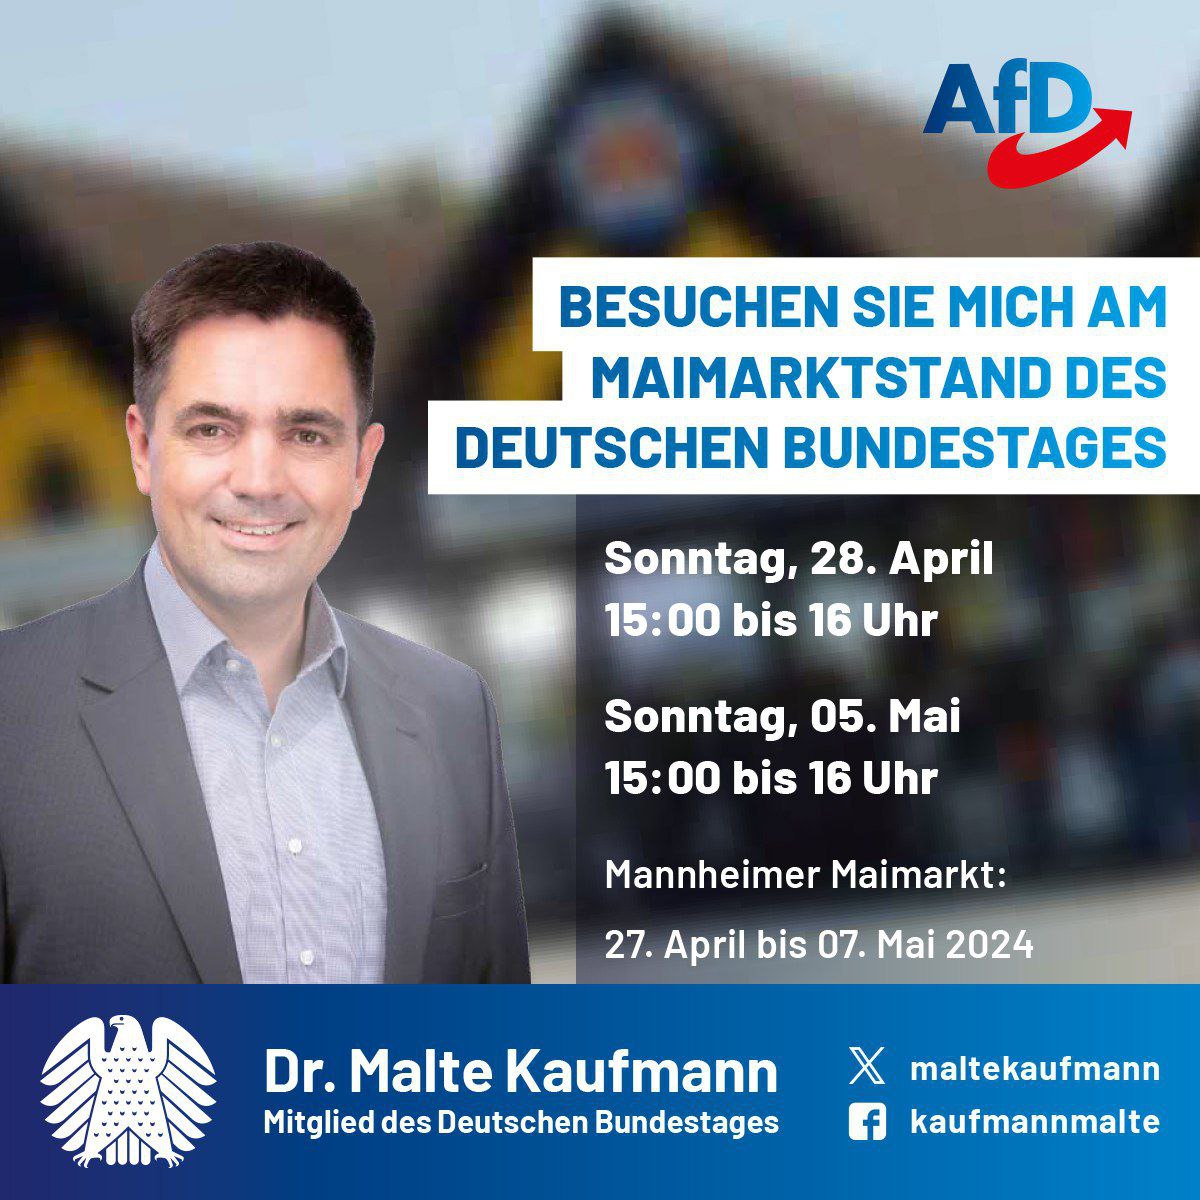 Die größte regionale Verbraucherausstellung Deutschlands 
startet heute: Der Mannheimer #Maimarkt! 
Ich freue mich sehr, Sie am Stand des Deutschen Bundestages 
zum regen Austausch herzlich begrüßen zu dürfen!
Halle 26, Stand 15
#AfD